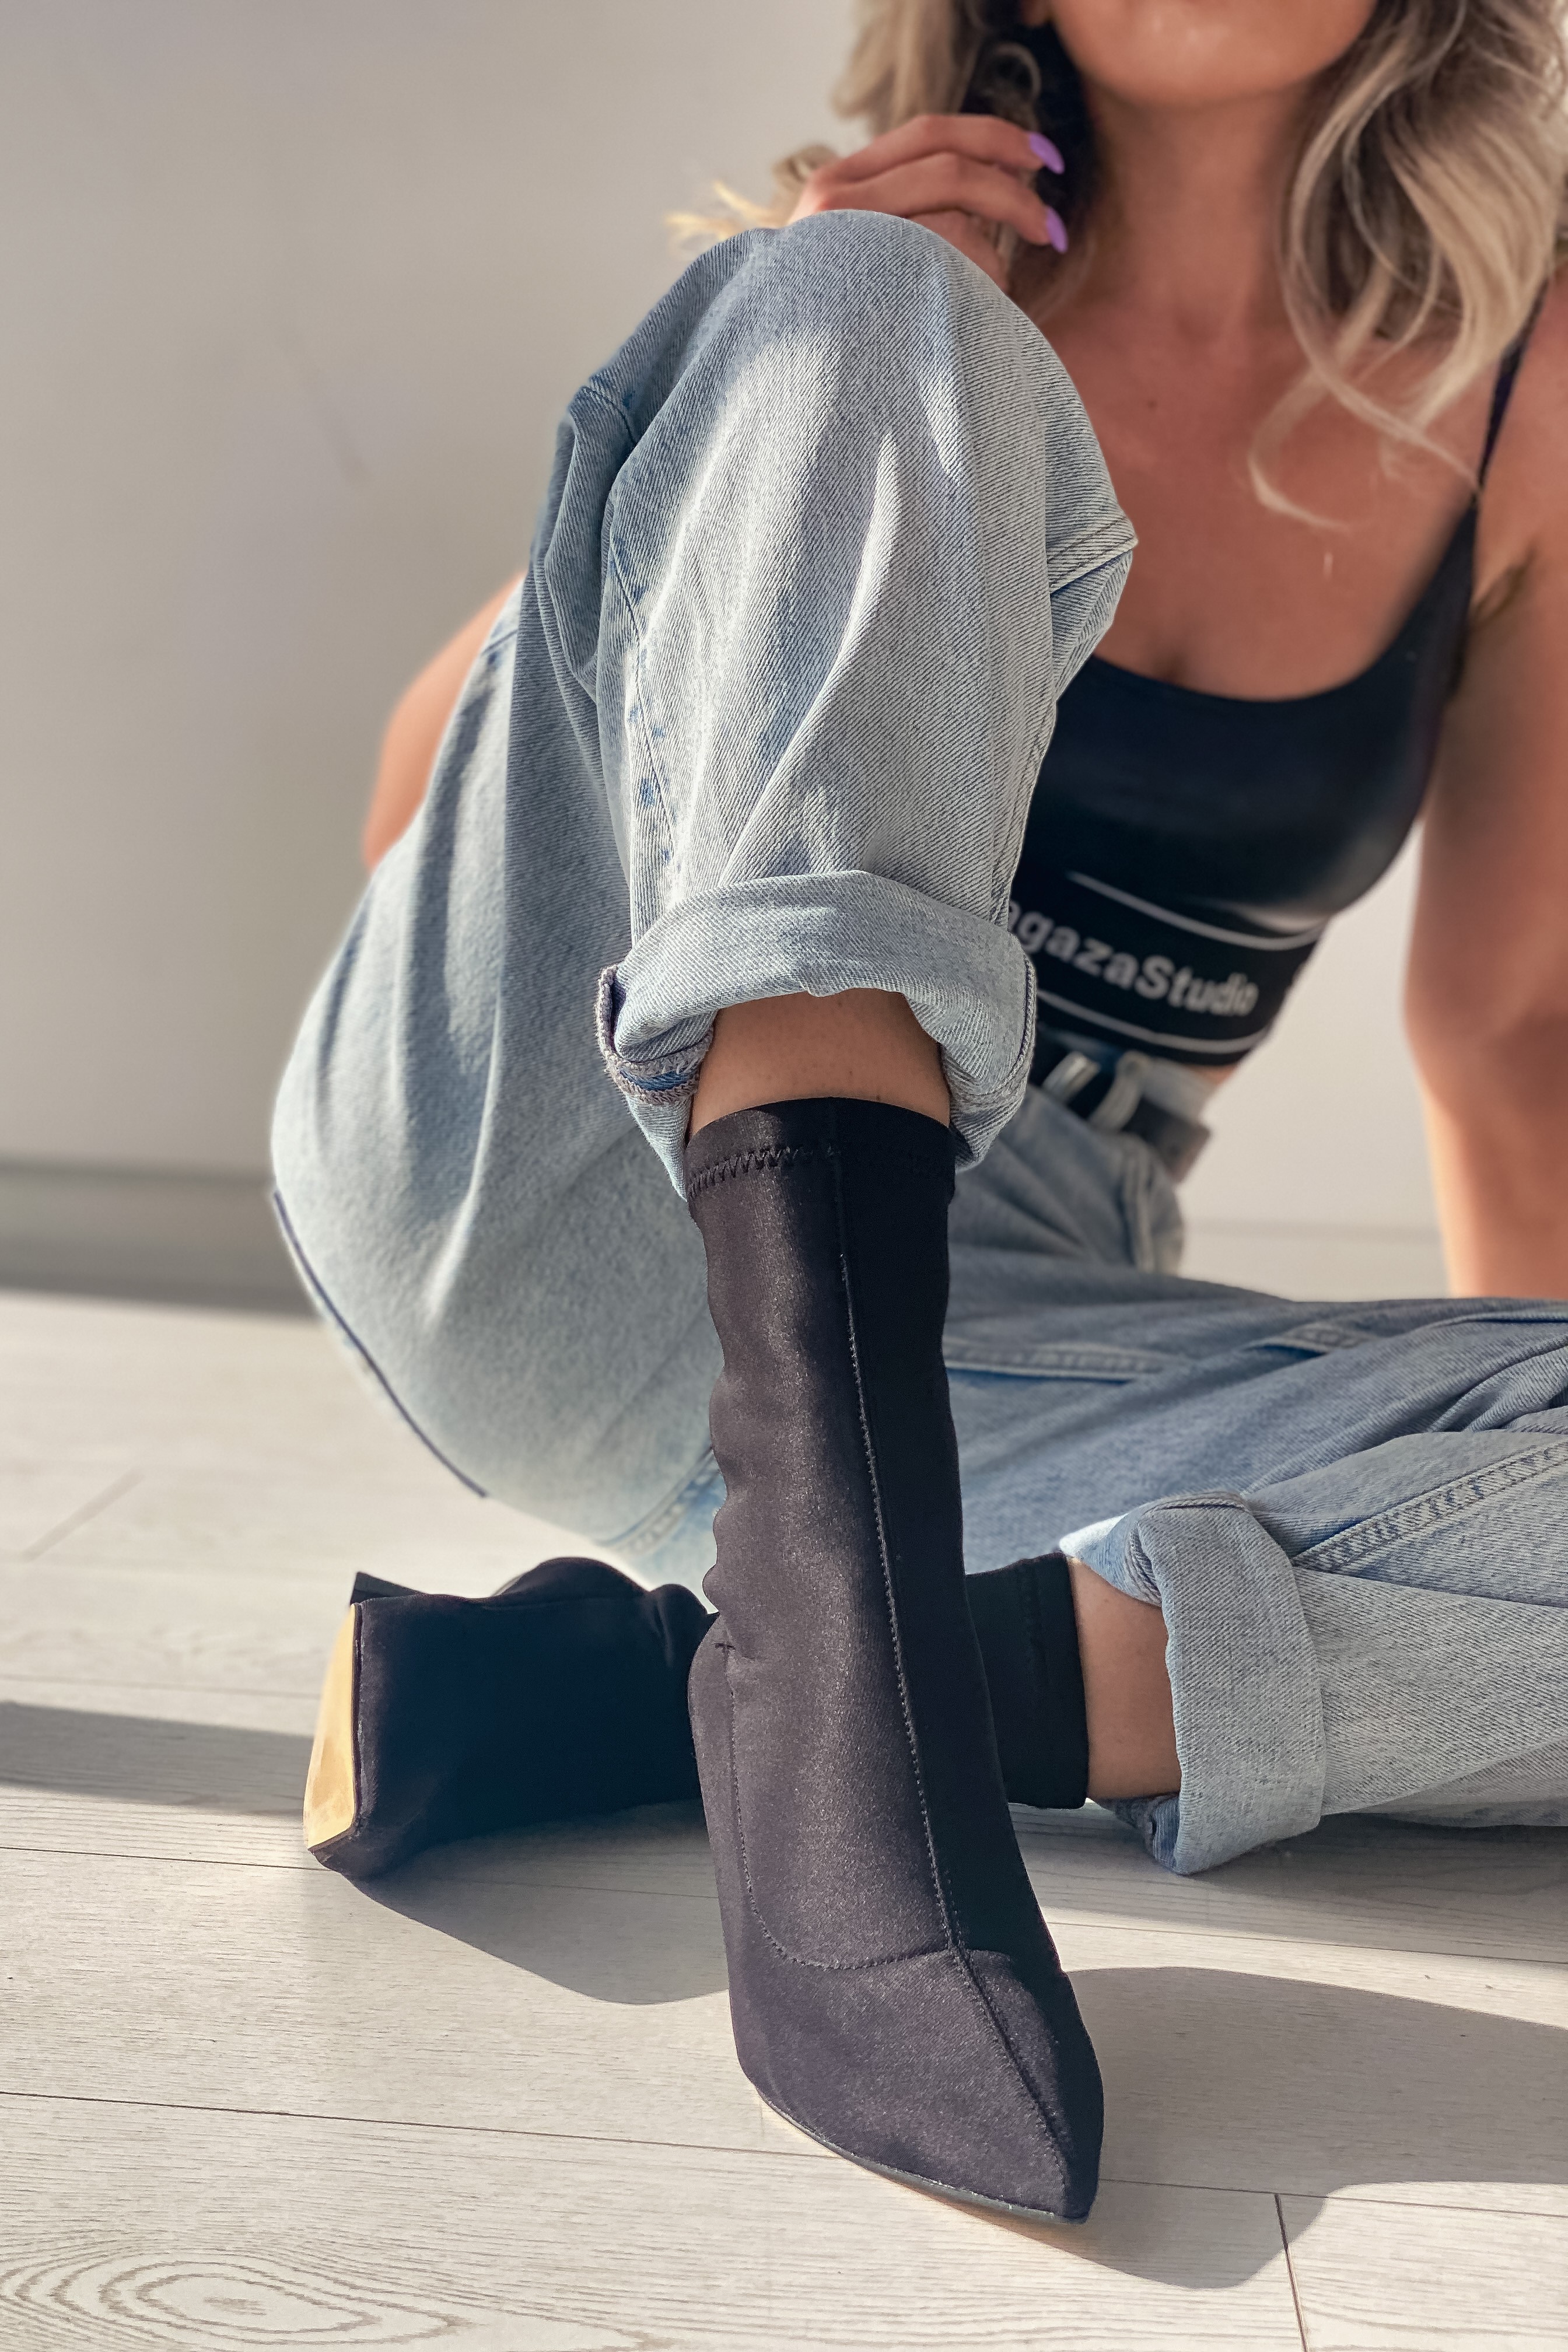 Loravo Kadın Streç Topuklu Bot Siyah